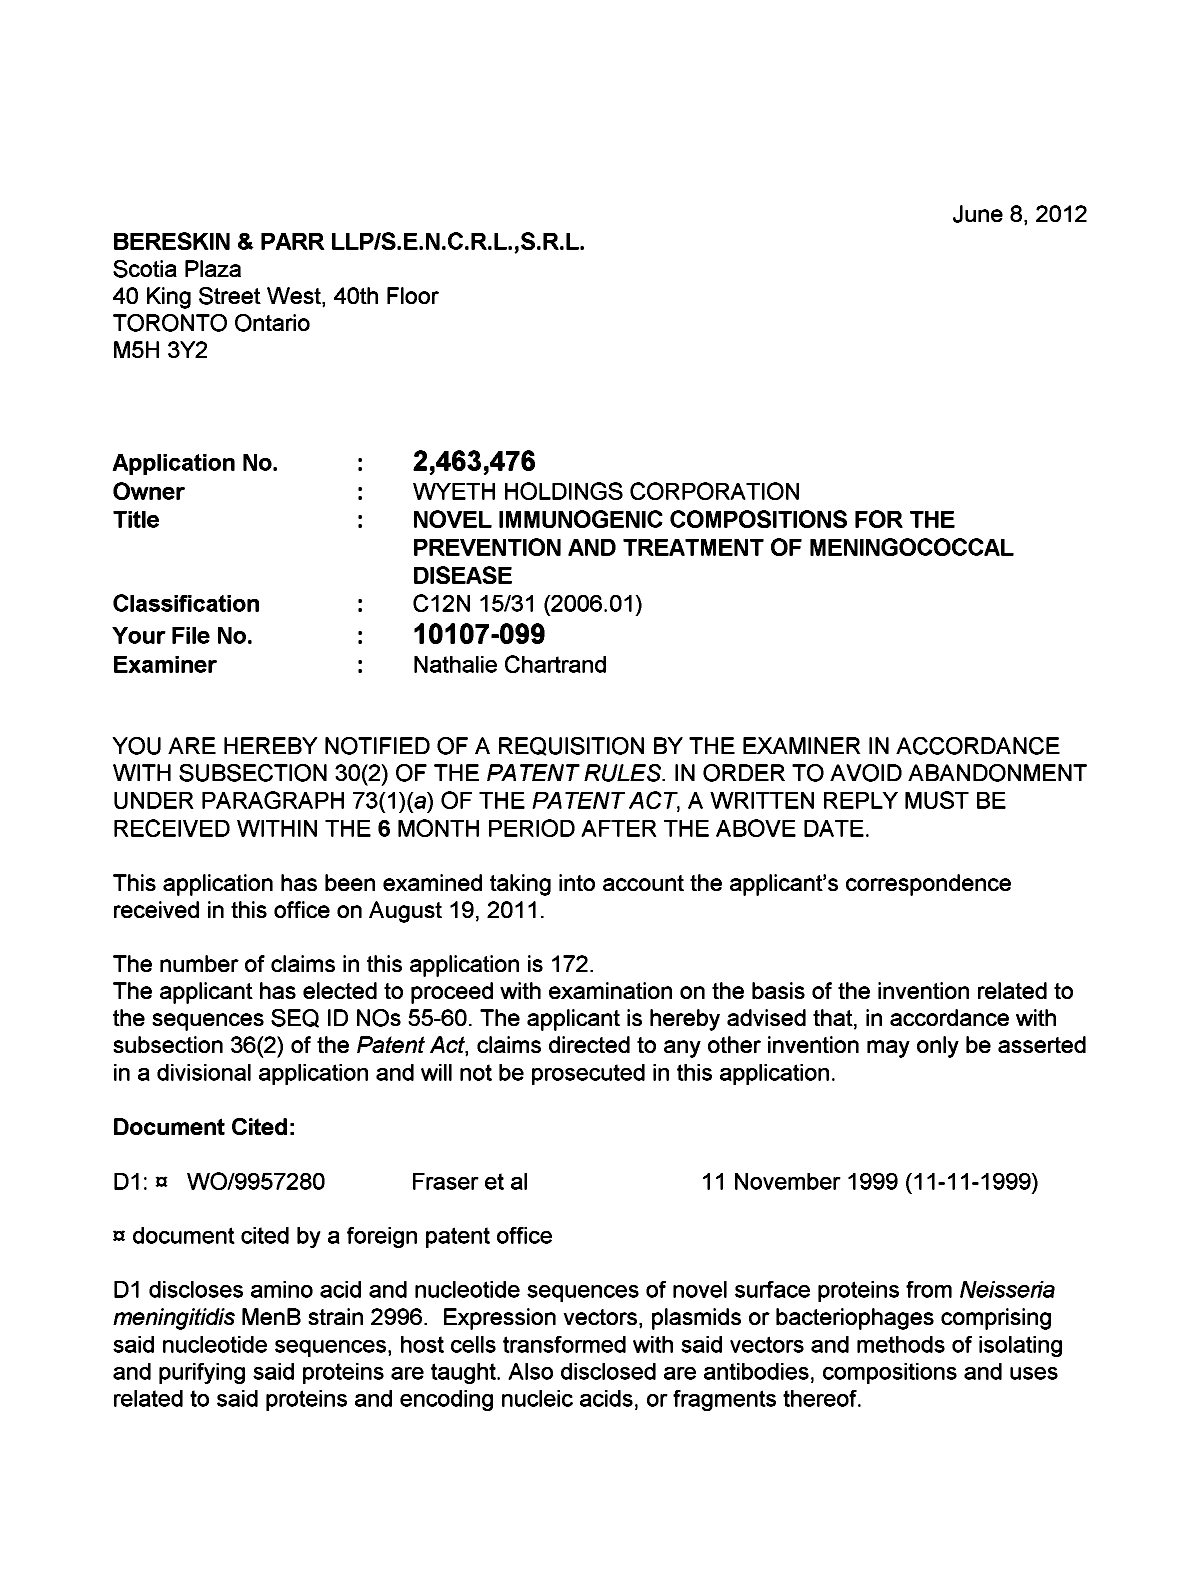 Document de brevet canadien 2463476. Poursuite-Amendment 20120608. Image 1 de 5